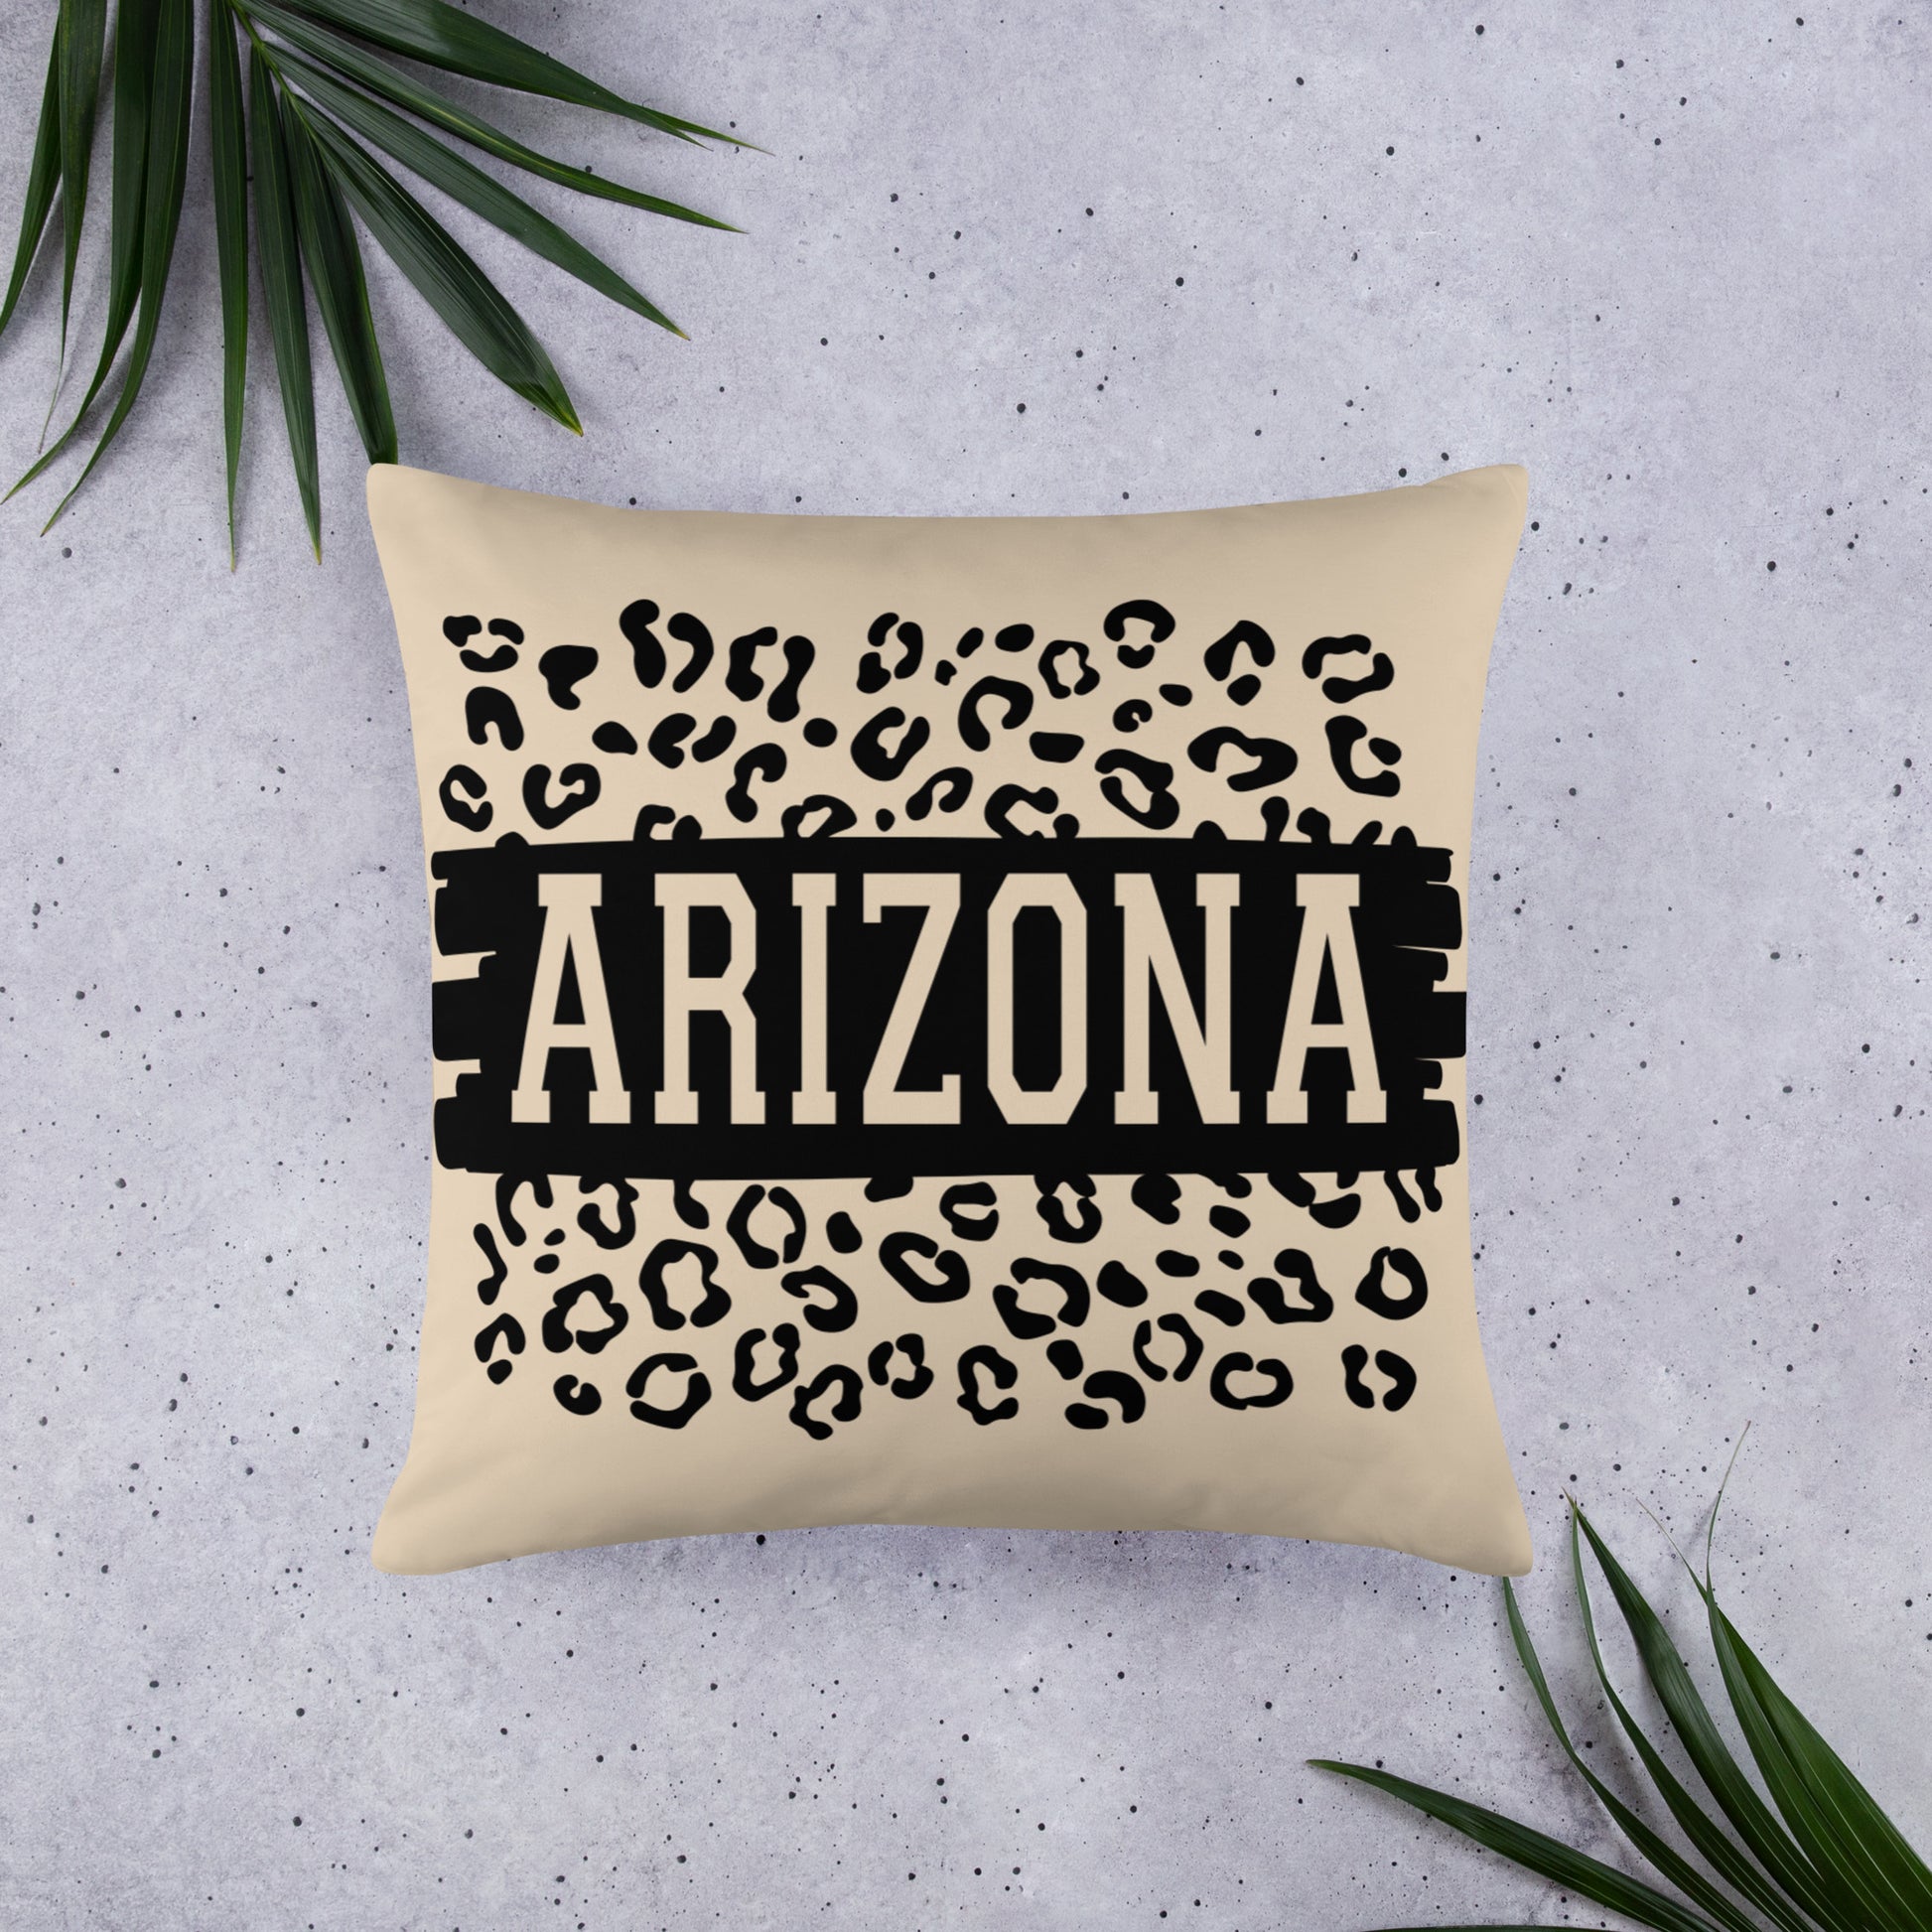 Arizona on Leopard Print Throw Pillow